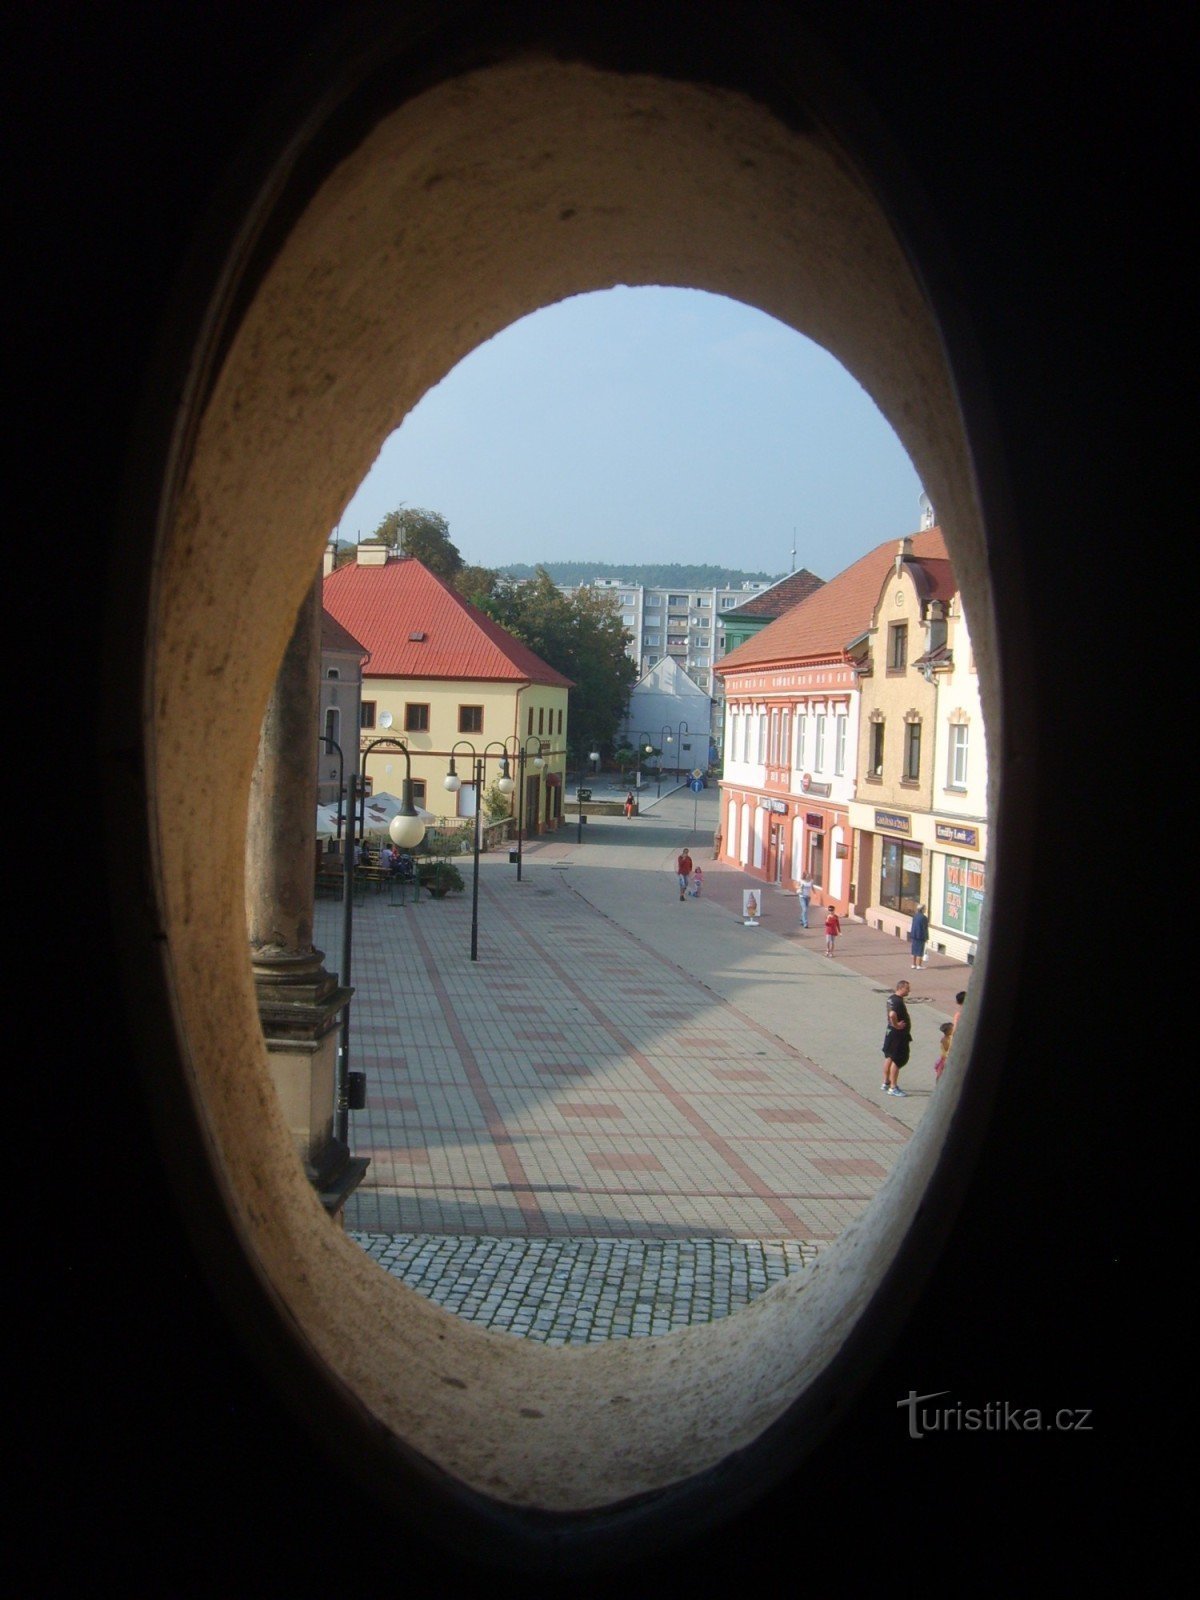 Blick aus dem Turmfenster